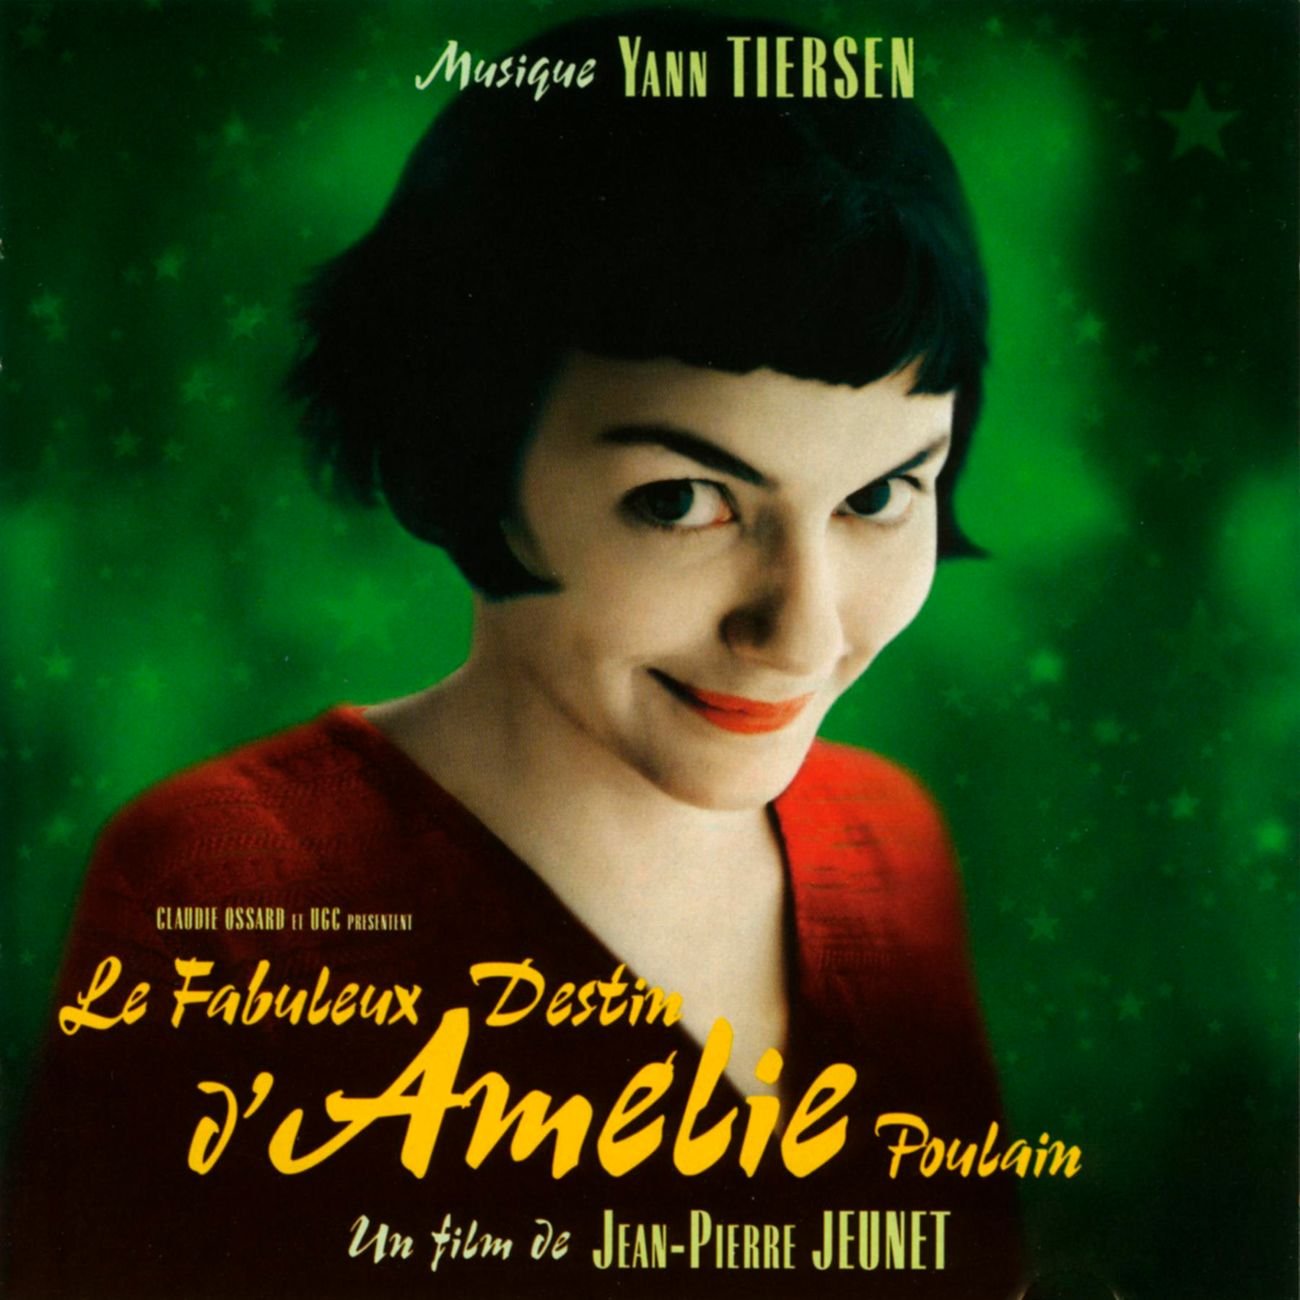 Kiểu tóc French bob làm nên DNA nhận diện cho cô nàng Amélie Poulain trong bộ phim nổi tiếng cùng tên.